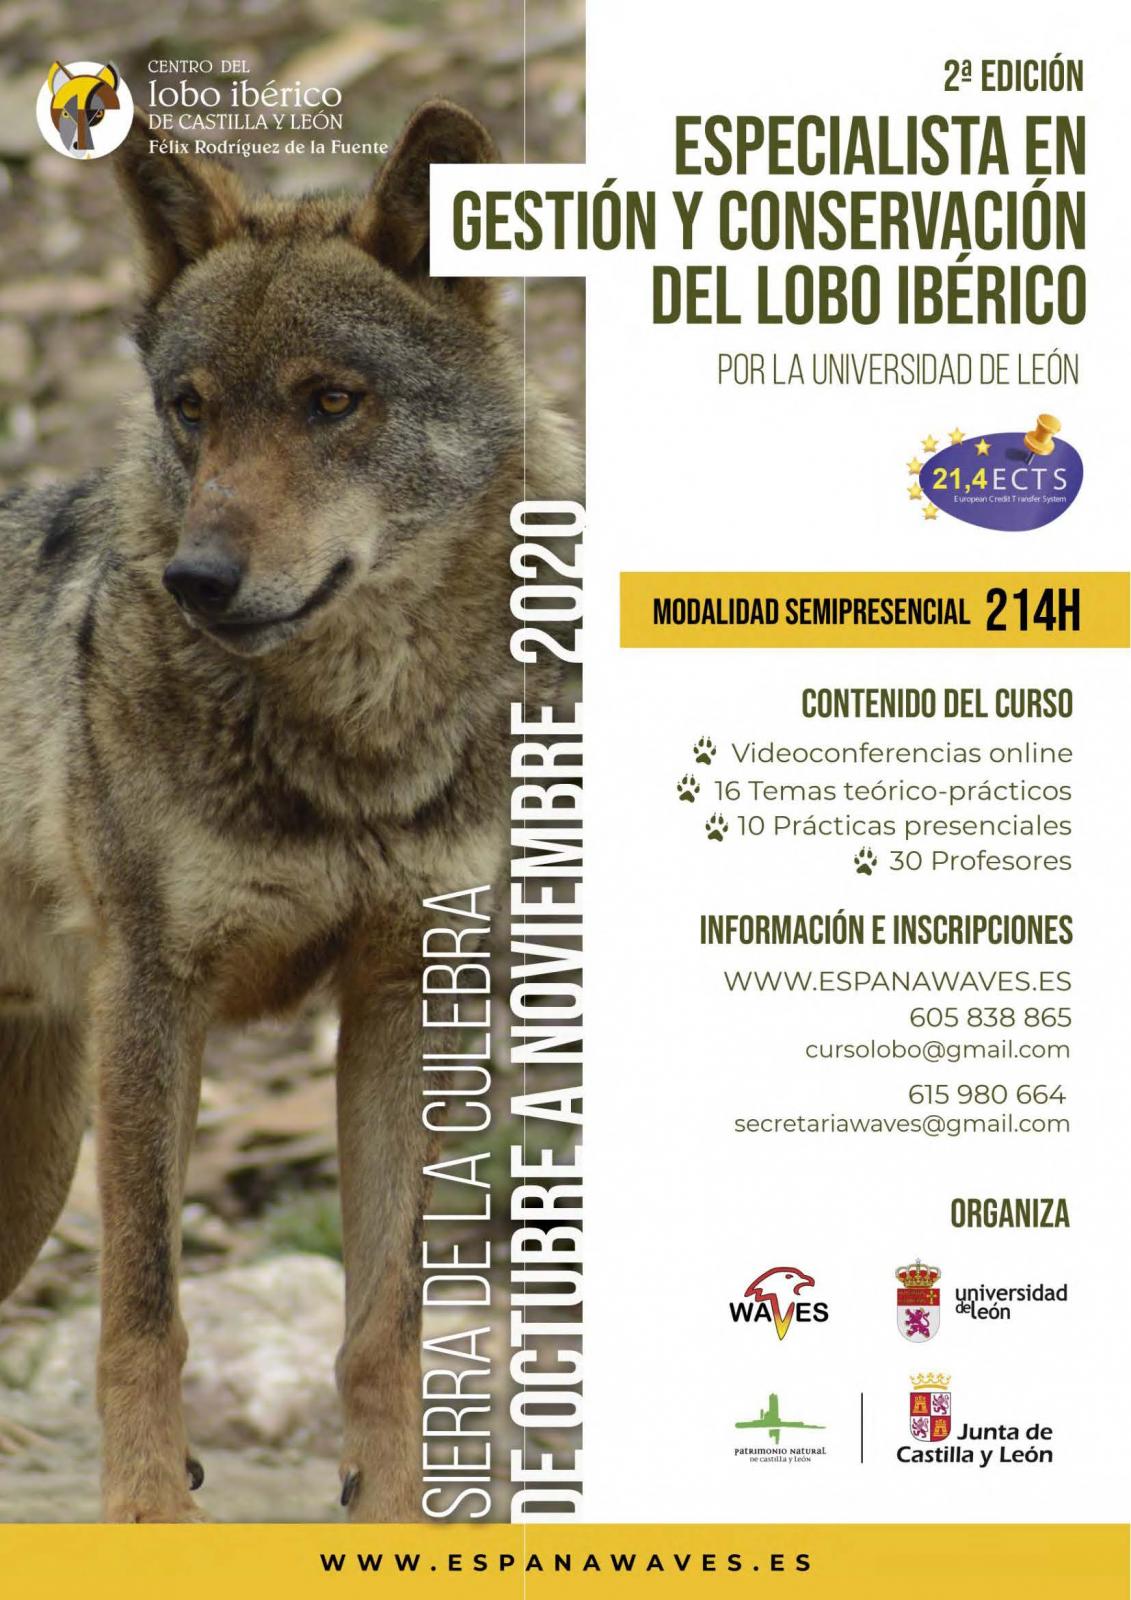 El Centro del Lobo Ibérico de CyL colabora en la segunda edición del Curso de Especialista en Gestión y Conservación del lobo ibérico.